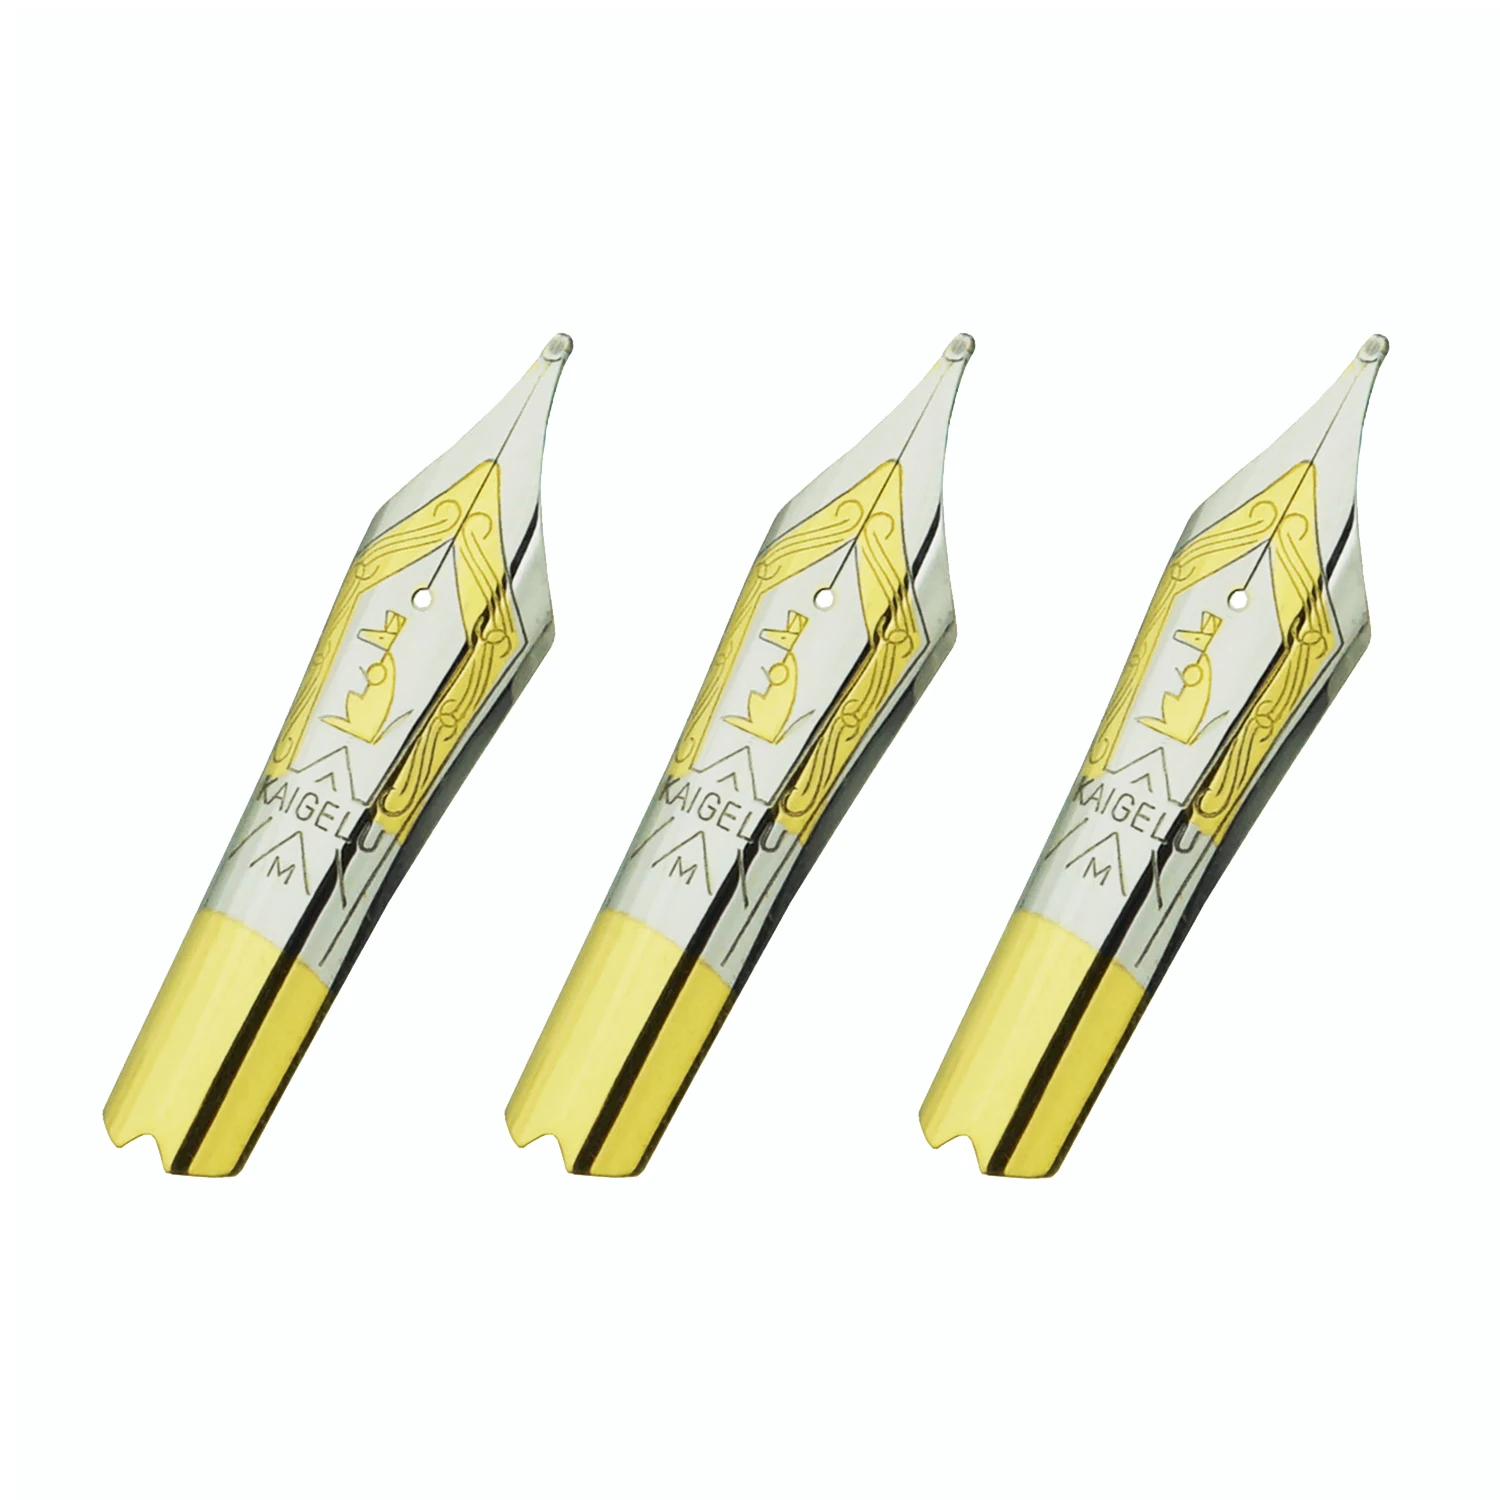 450 3PCS Kaigelu Fountain Pen Nibs #6 Nib EF F M for Jinhao 100 Yongsheng 699 